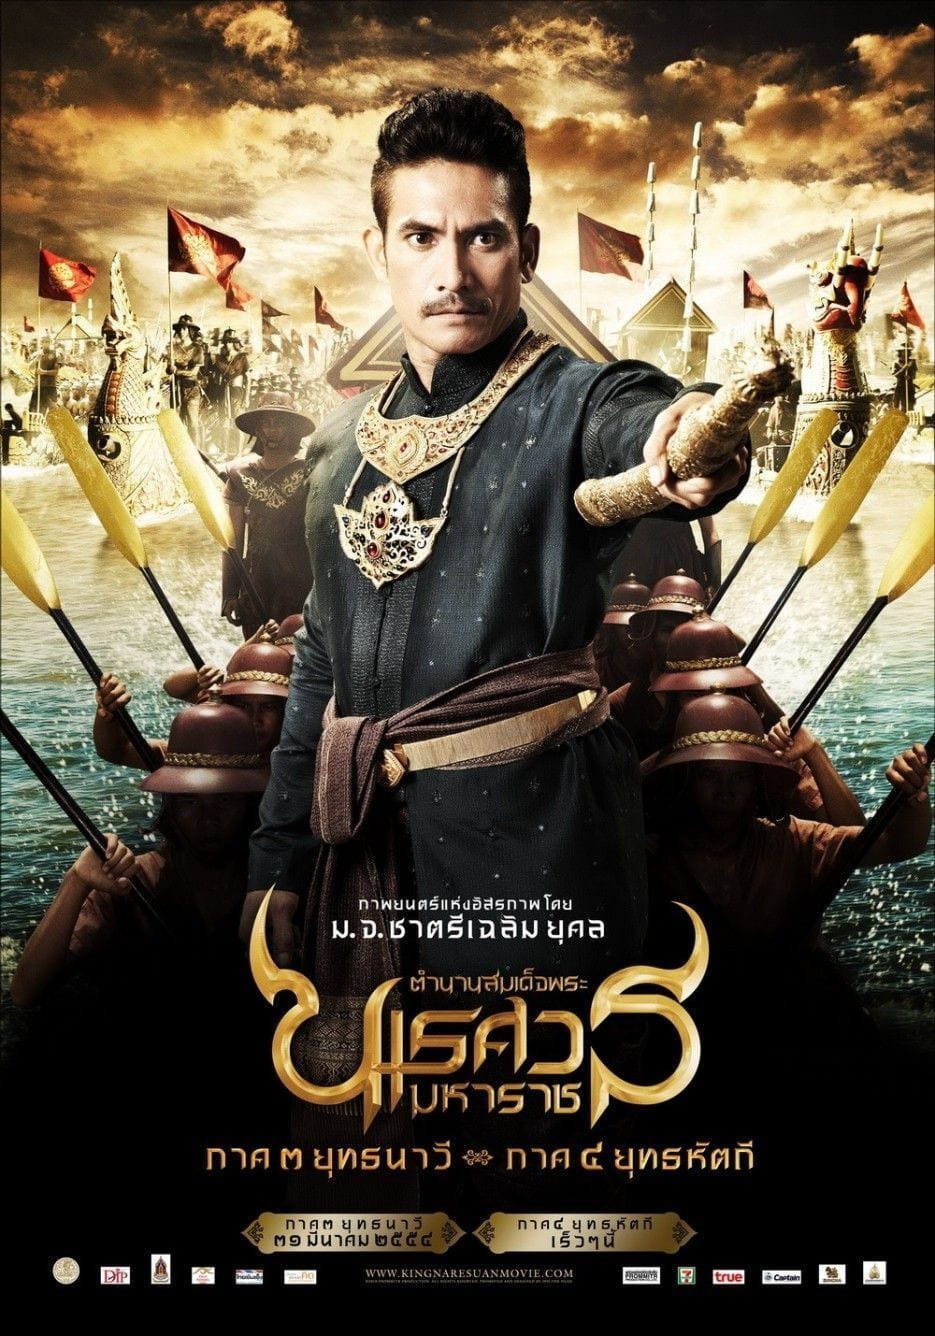 ดูหนังออนไลน์ฟรี King Naresuan 3